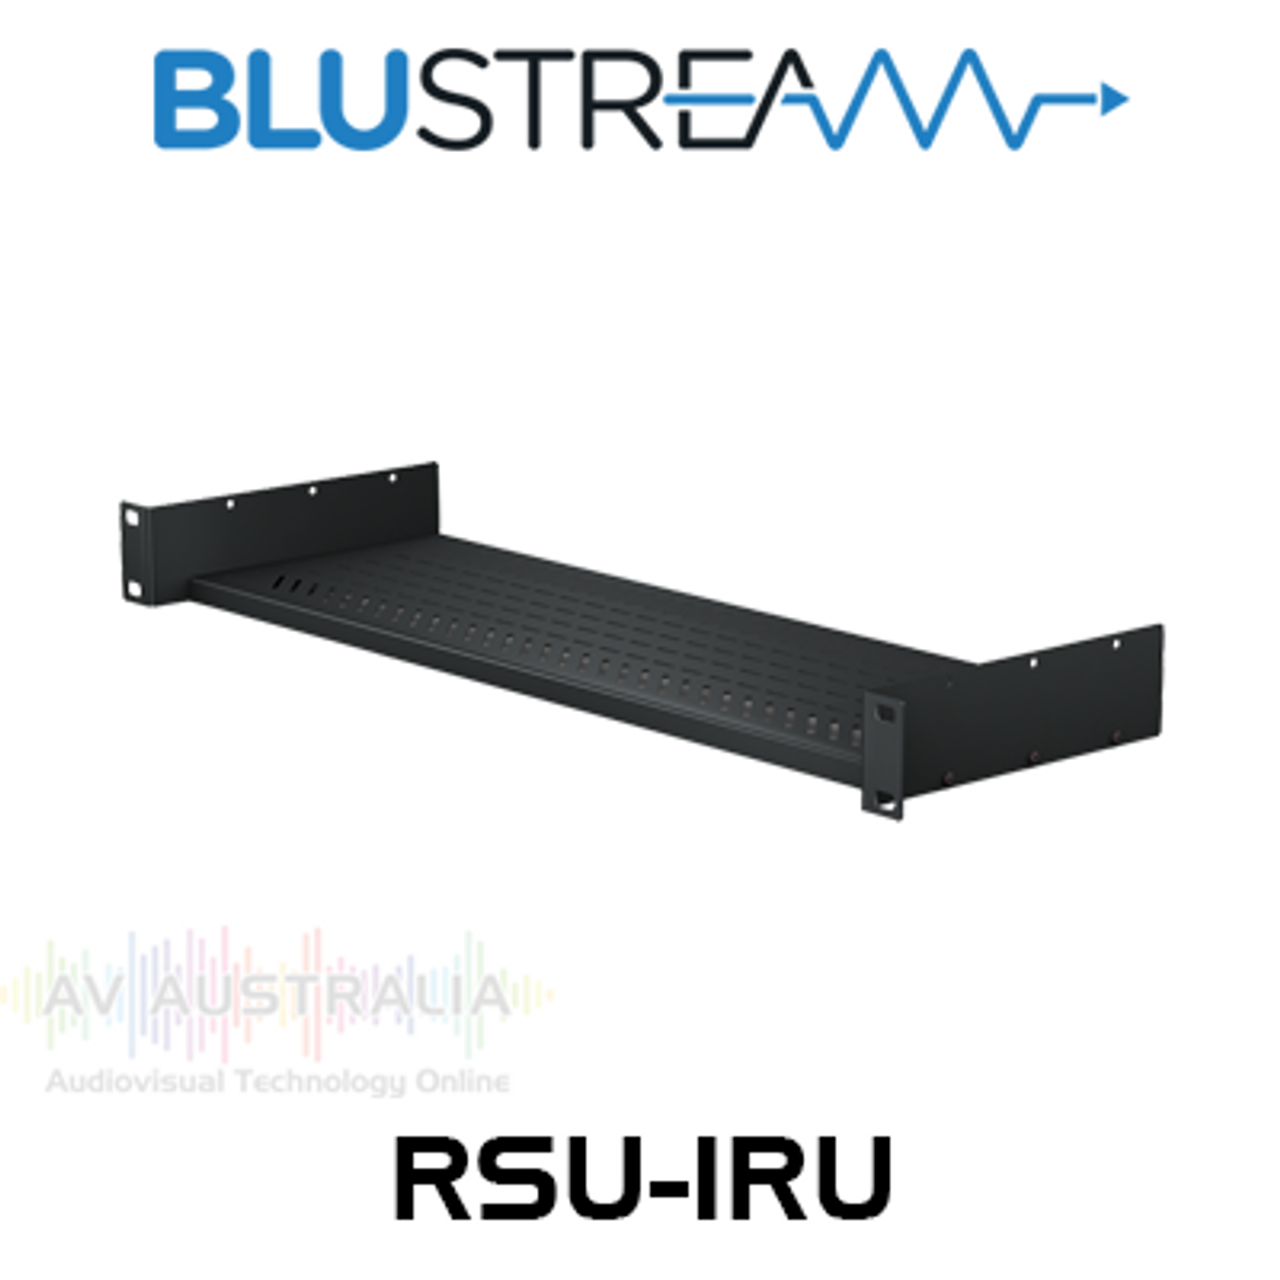 BluStream RSU-1RU Universal 1RU Rack Shelf Unit